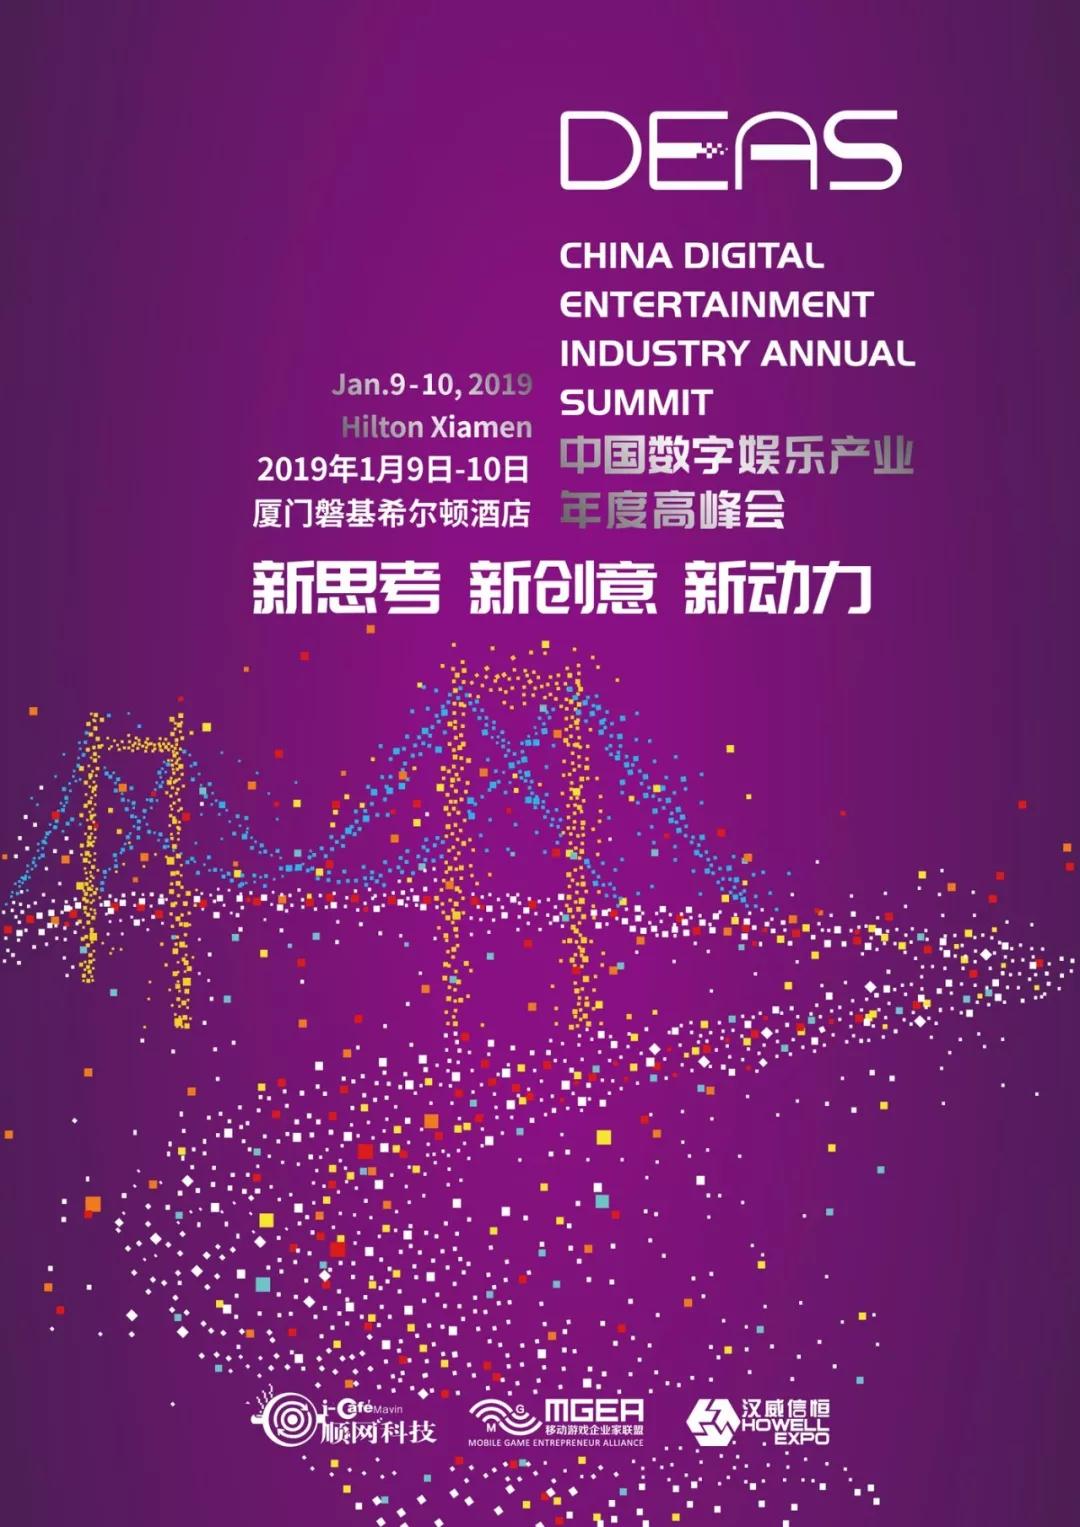 完美世界CEO萧泓博士将出席第五届中国数字娱乐产业年度高峰会并发表重要演讲